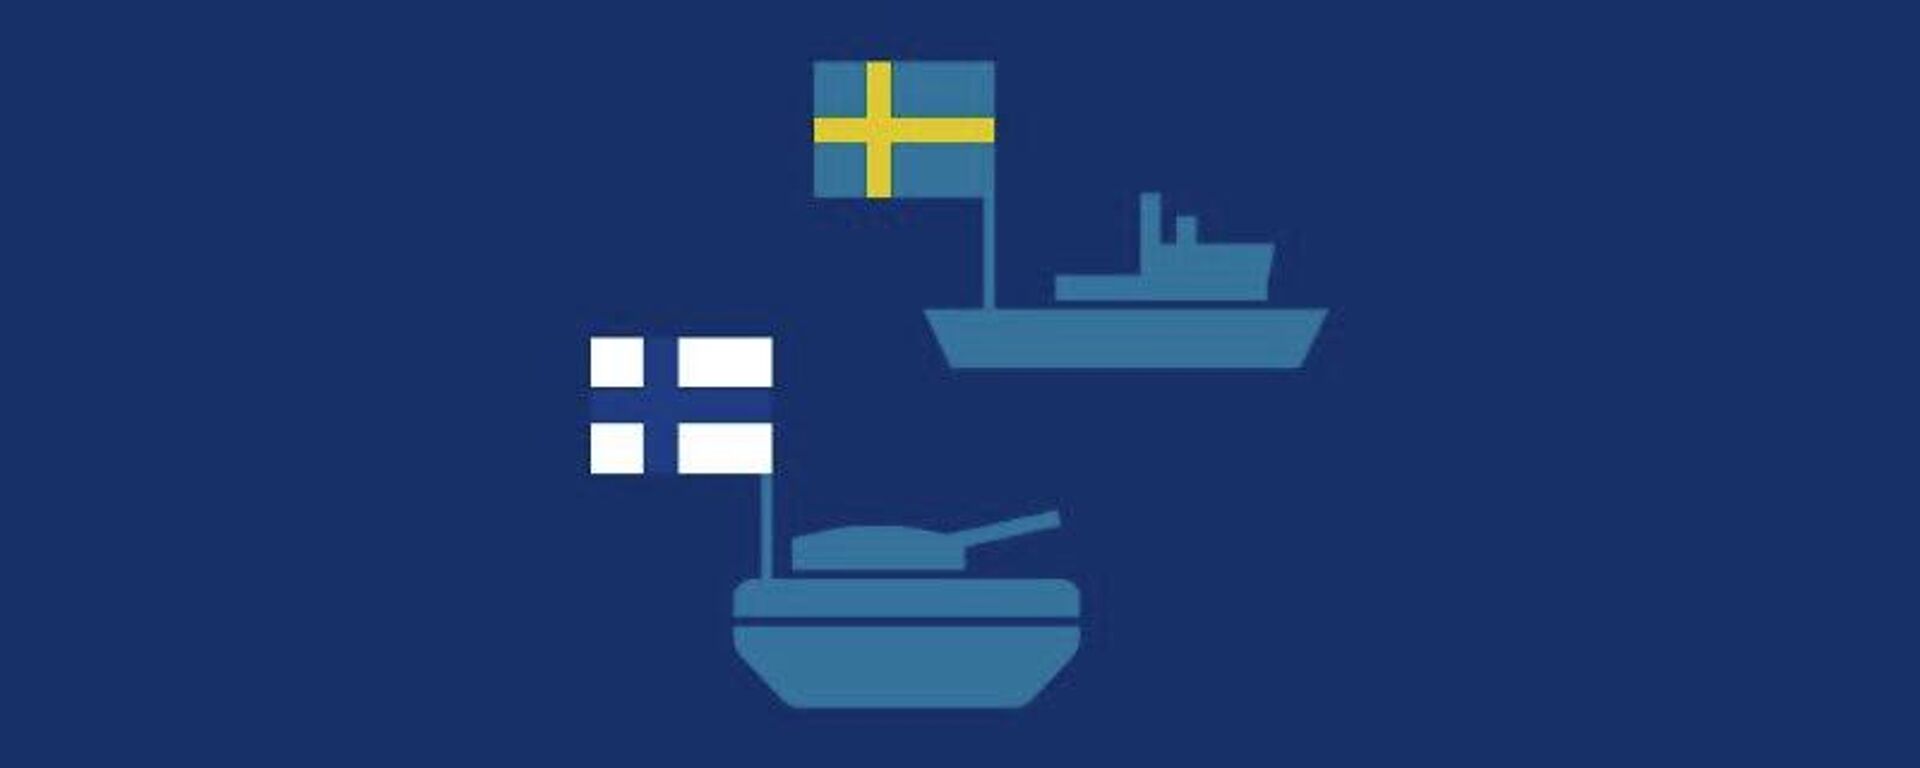 El poder militar de Suecia y Finlandia, los candidatos a la OTAN - Sputnik Mundo, 1920, 17.05.2022